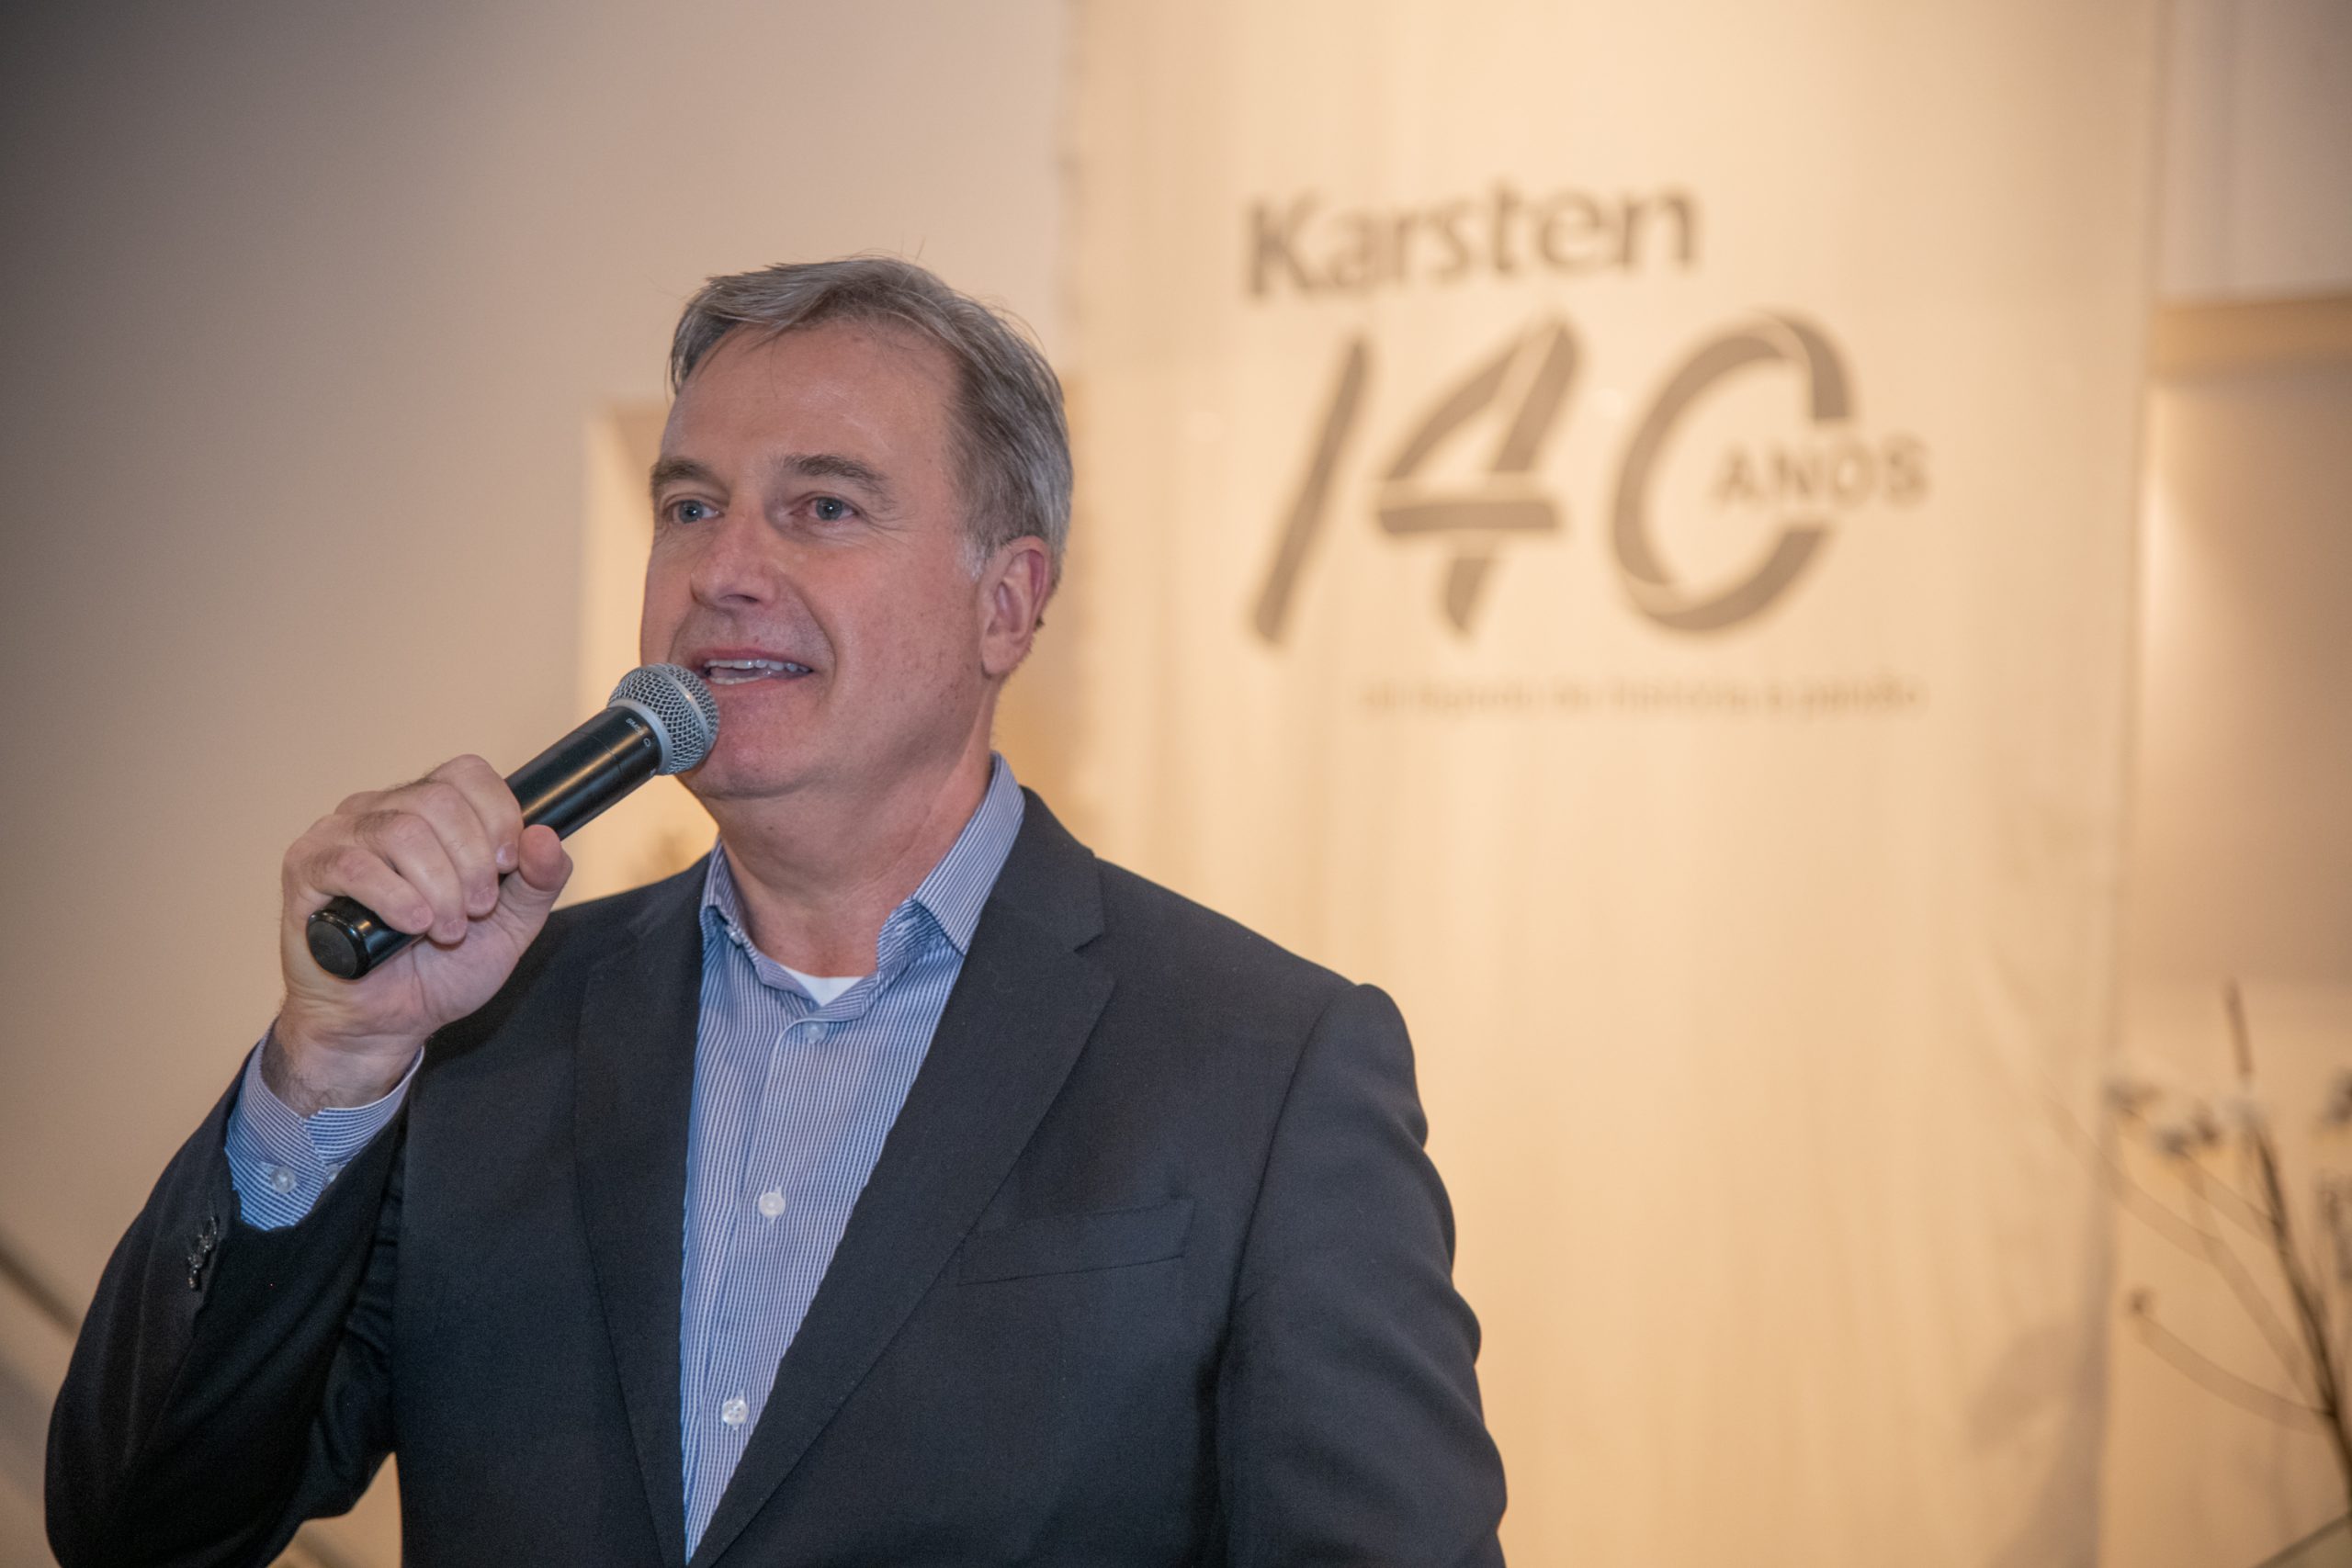 Karsten celebra seu legado de 140 com showroom em São Paulo